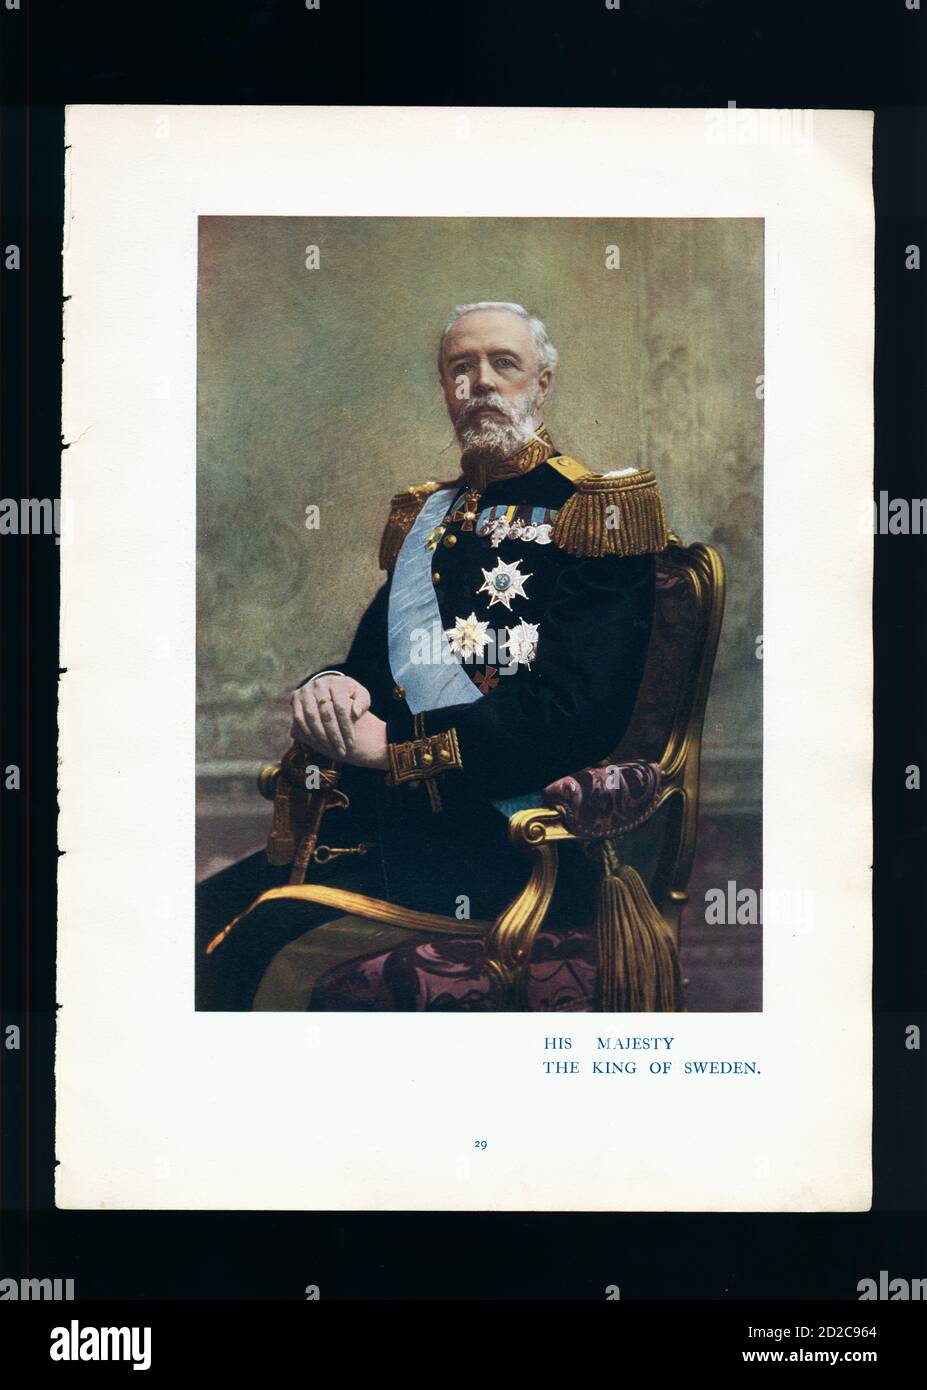 Retrato cromolitográfico del rey Oscar II de Suecia (21 de enero de 1829 – 8 de diciembre de 1907). Reinó del 18 de septiembre de 1872 al 8 de diciembre de 1907. Imag Foto de stock